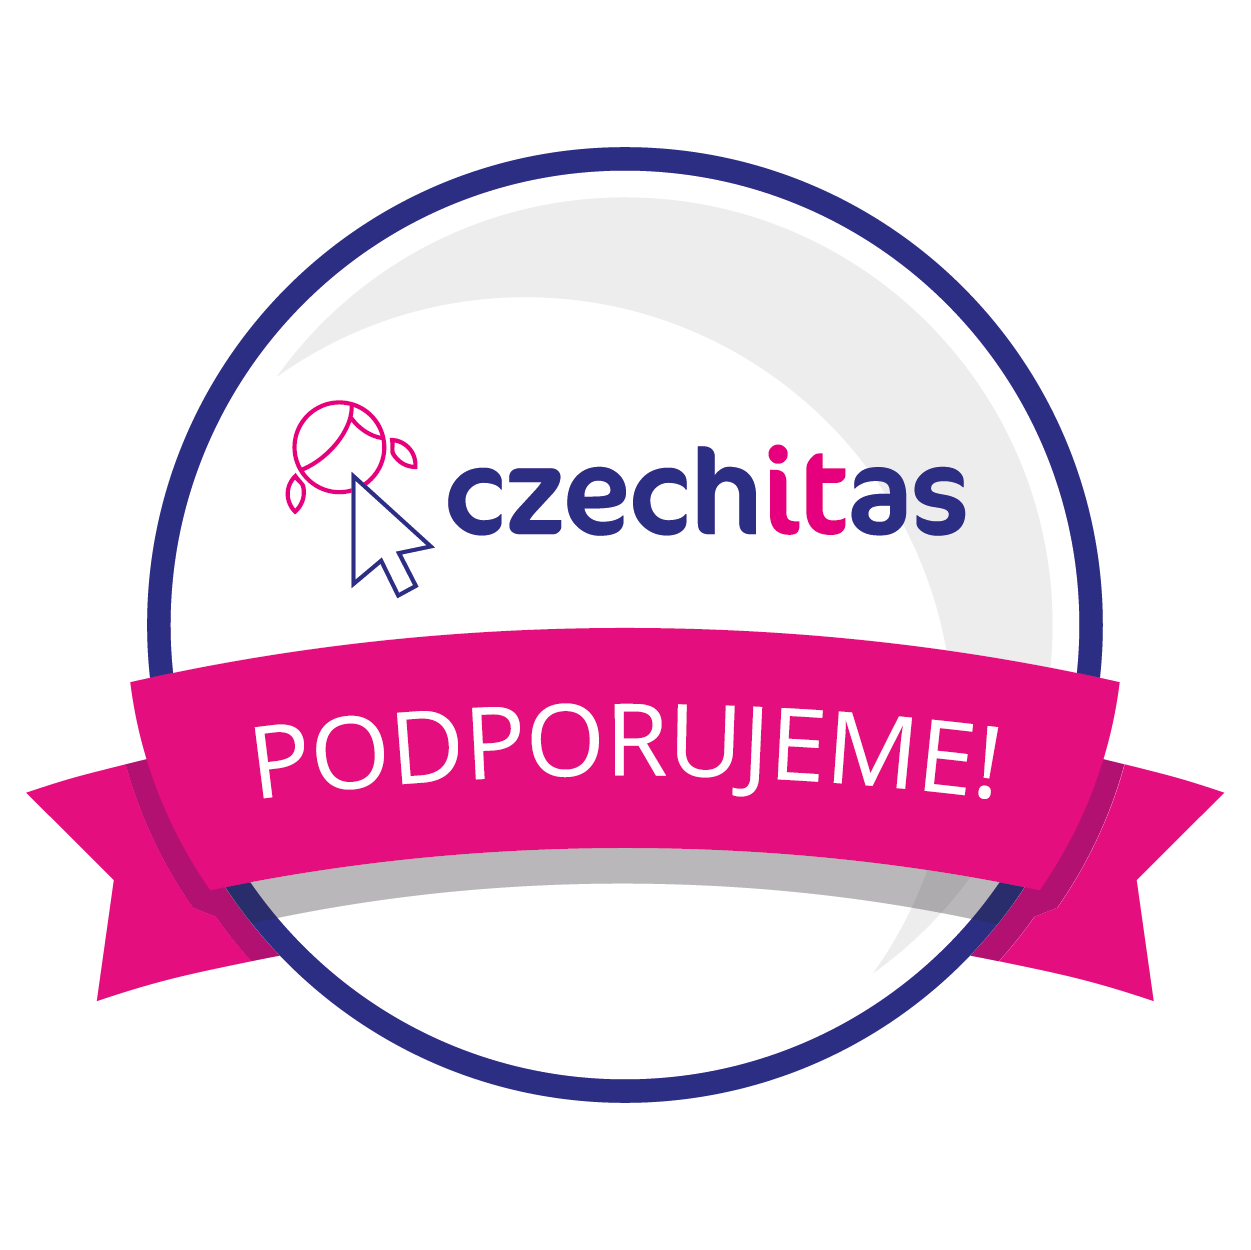 Podporujeme Czechitas v jejich inspirativním úsilí otevřít svět IT ženám.